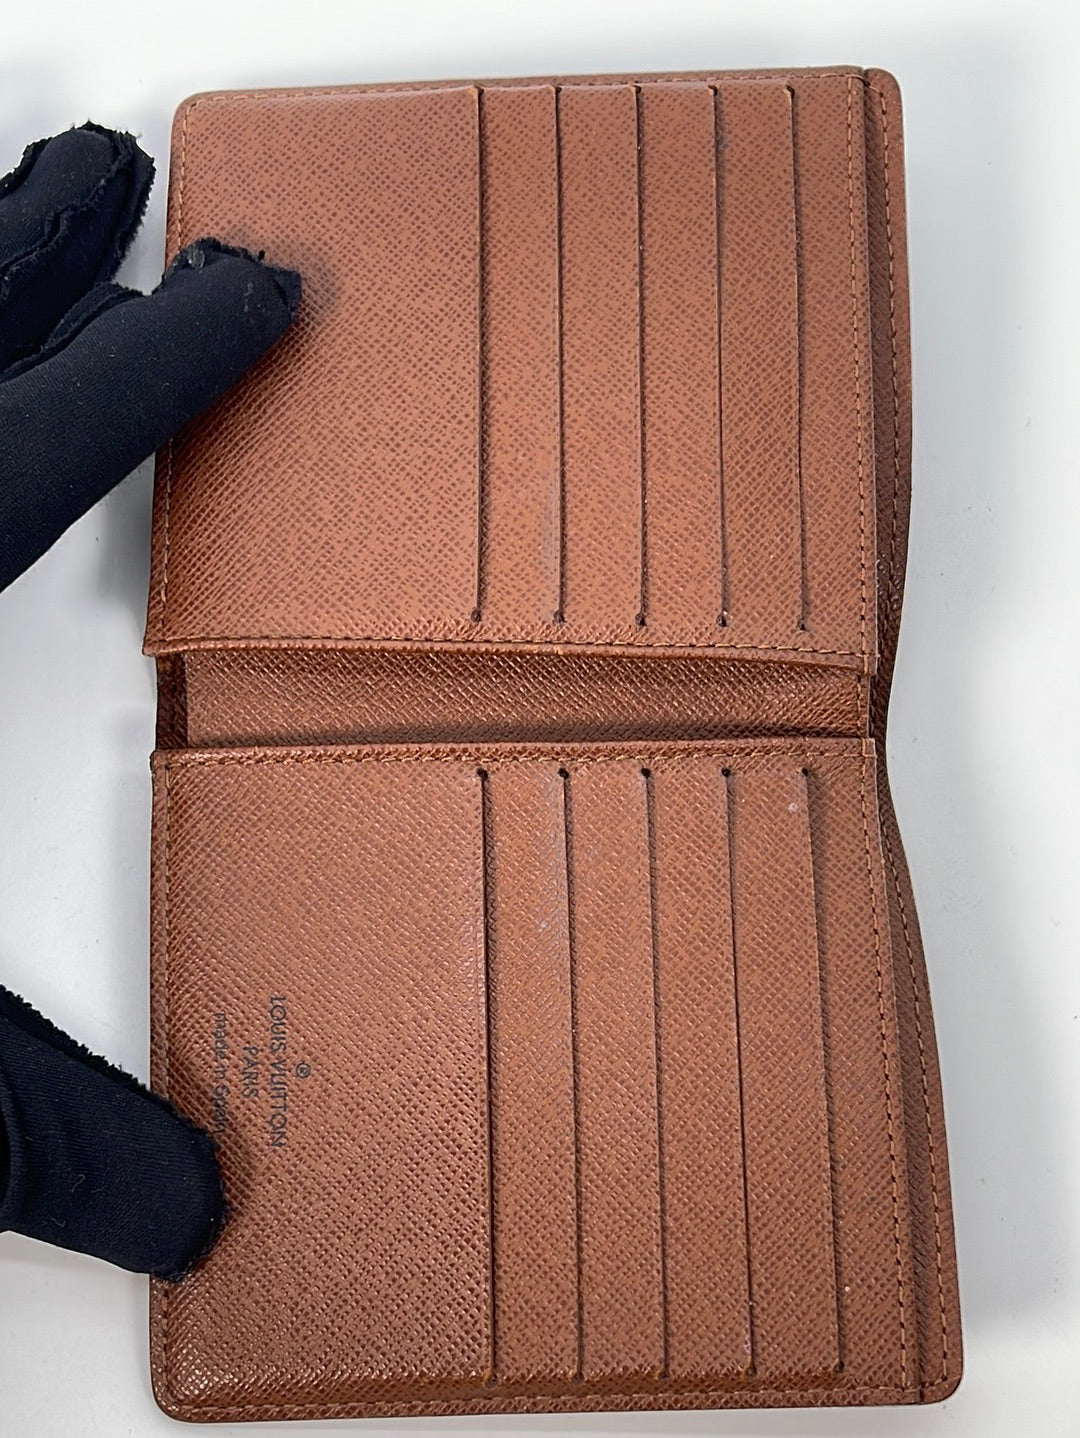 Louis Vuitton Mens Wallet & Card Holder 